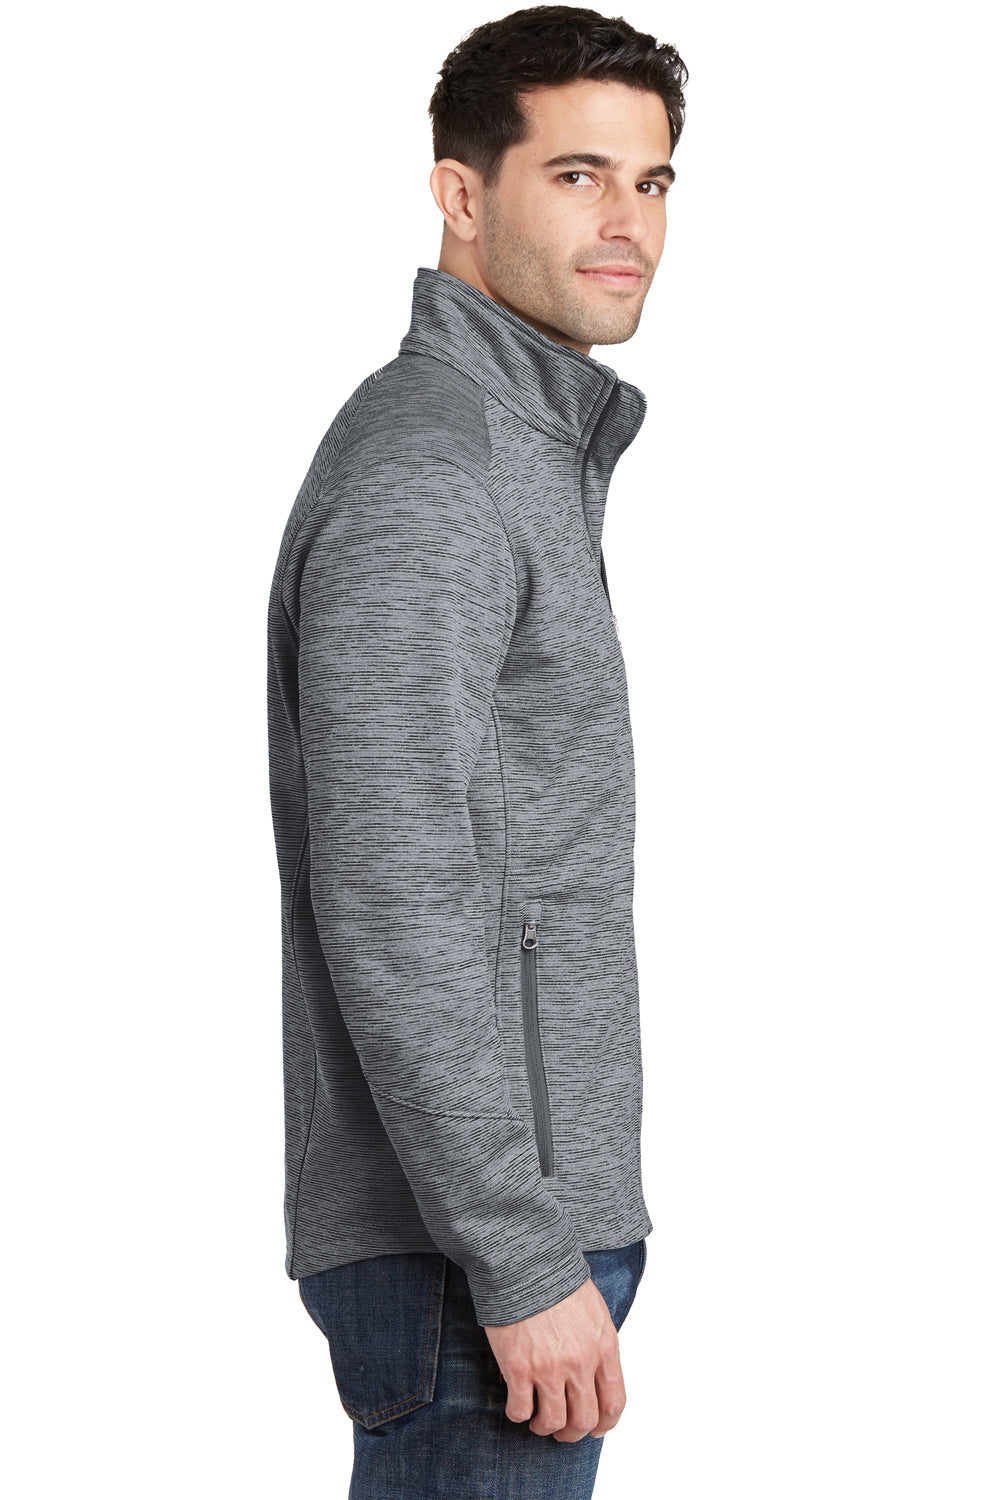 Port Authority F231 Mens Full Zip Fleece Jacket Grey Side